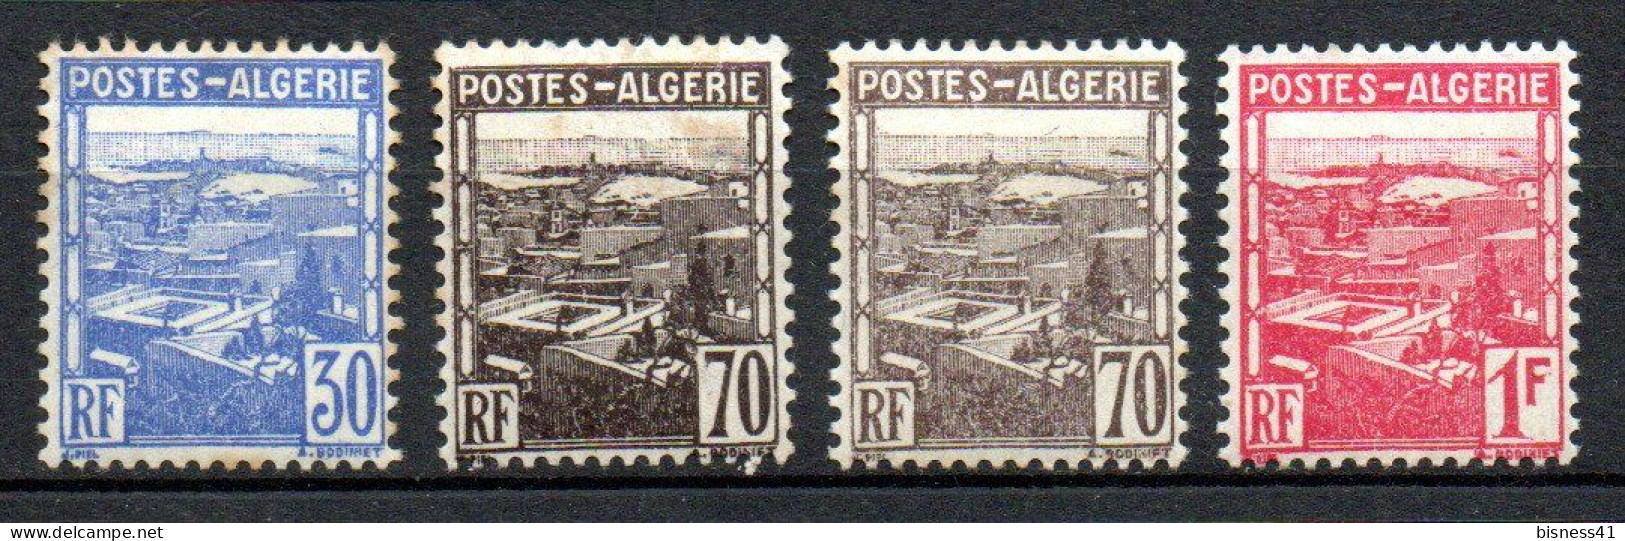 Col33 Colonie Algérie N° 163 à 165 + 164 Foncé Neuf X MH Cote : 1,00€ - Oblitérés